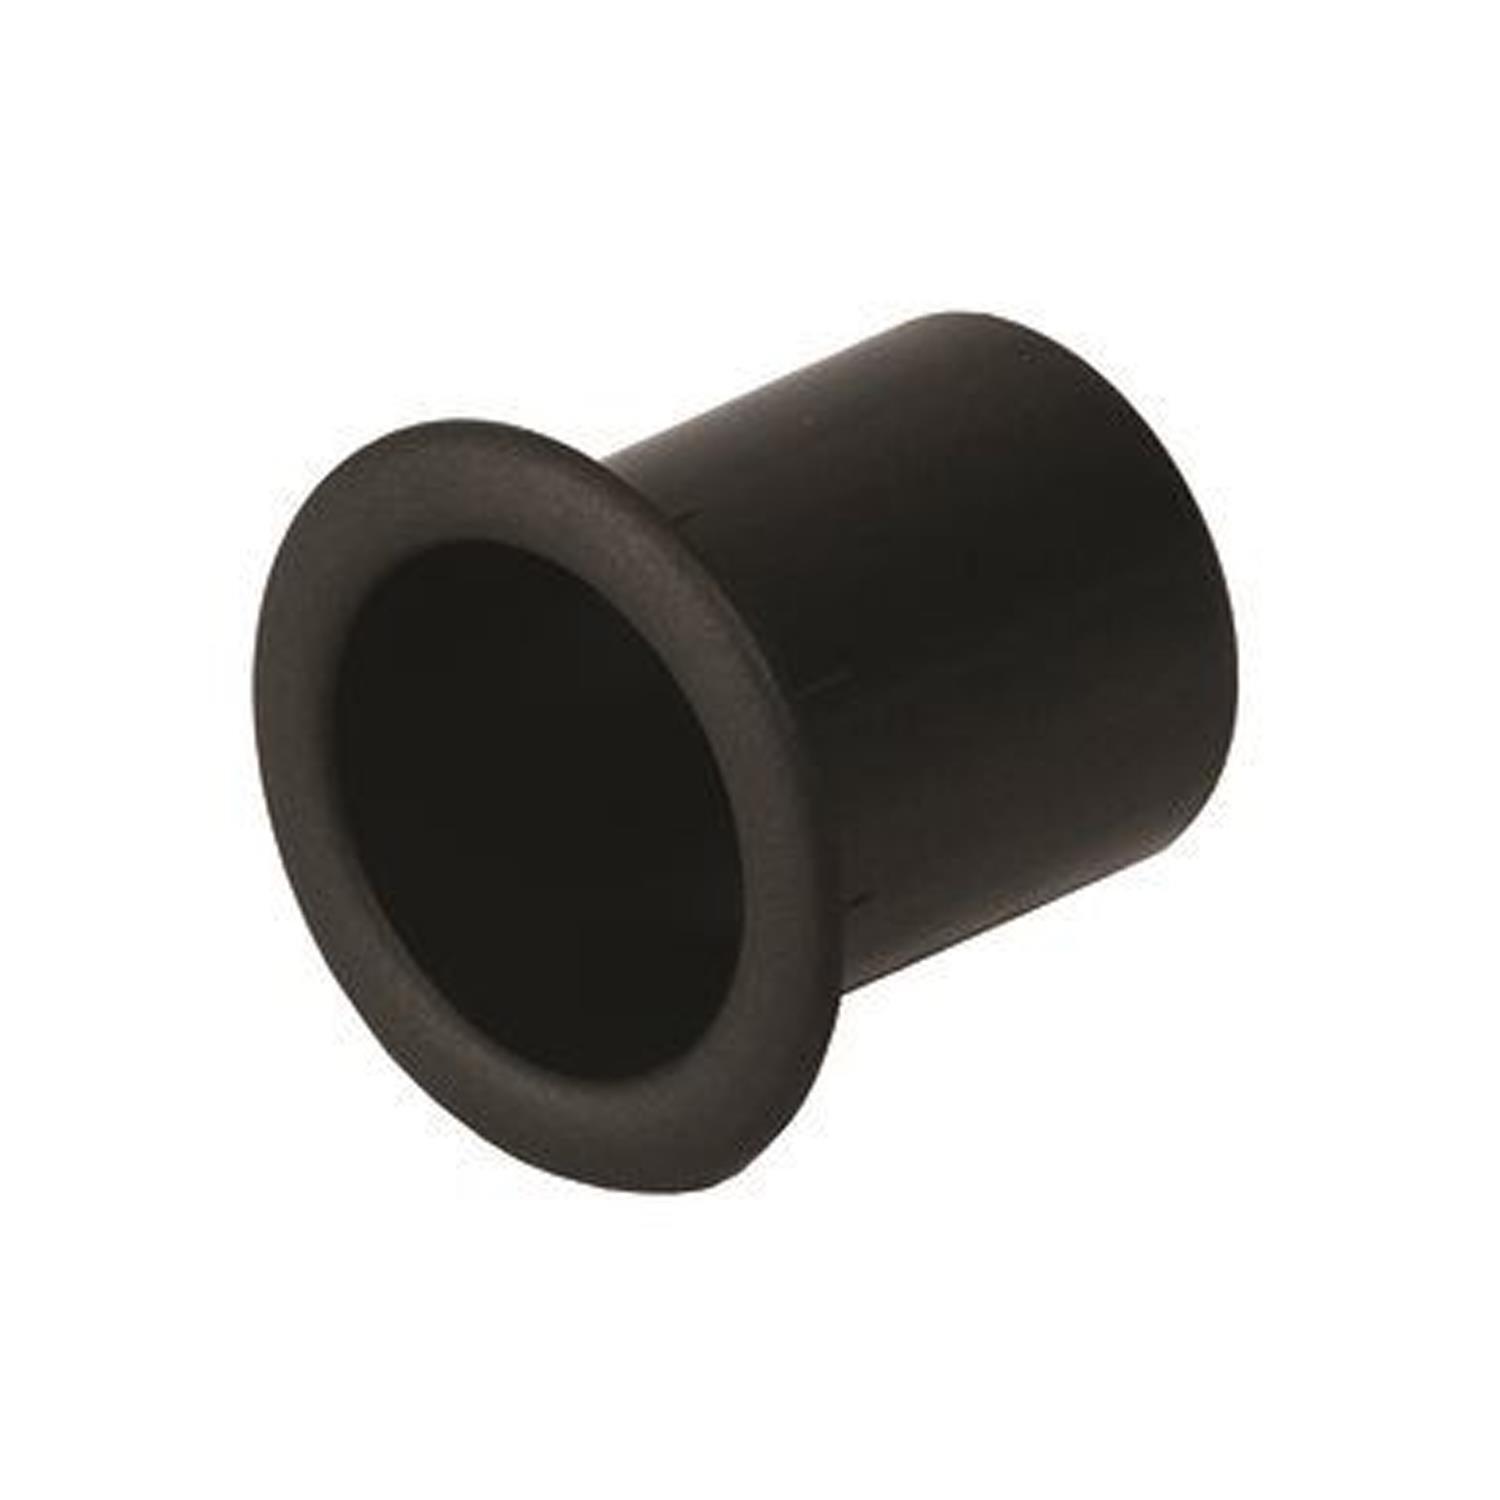 Penn Elcom 50mm Black Plastic Speaker Cabinet Port Tube - DY Pro Audio